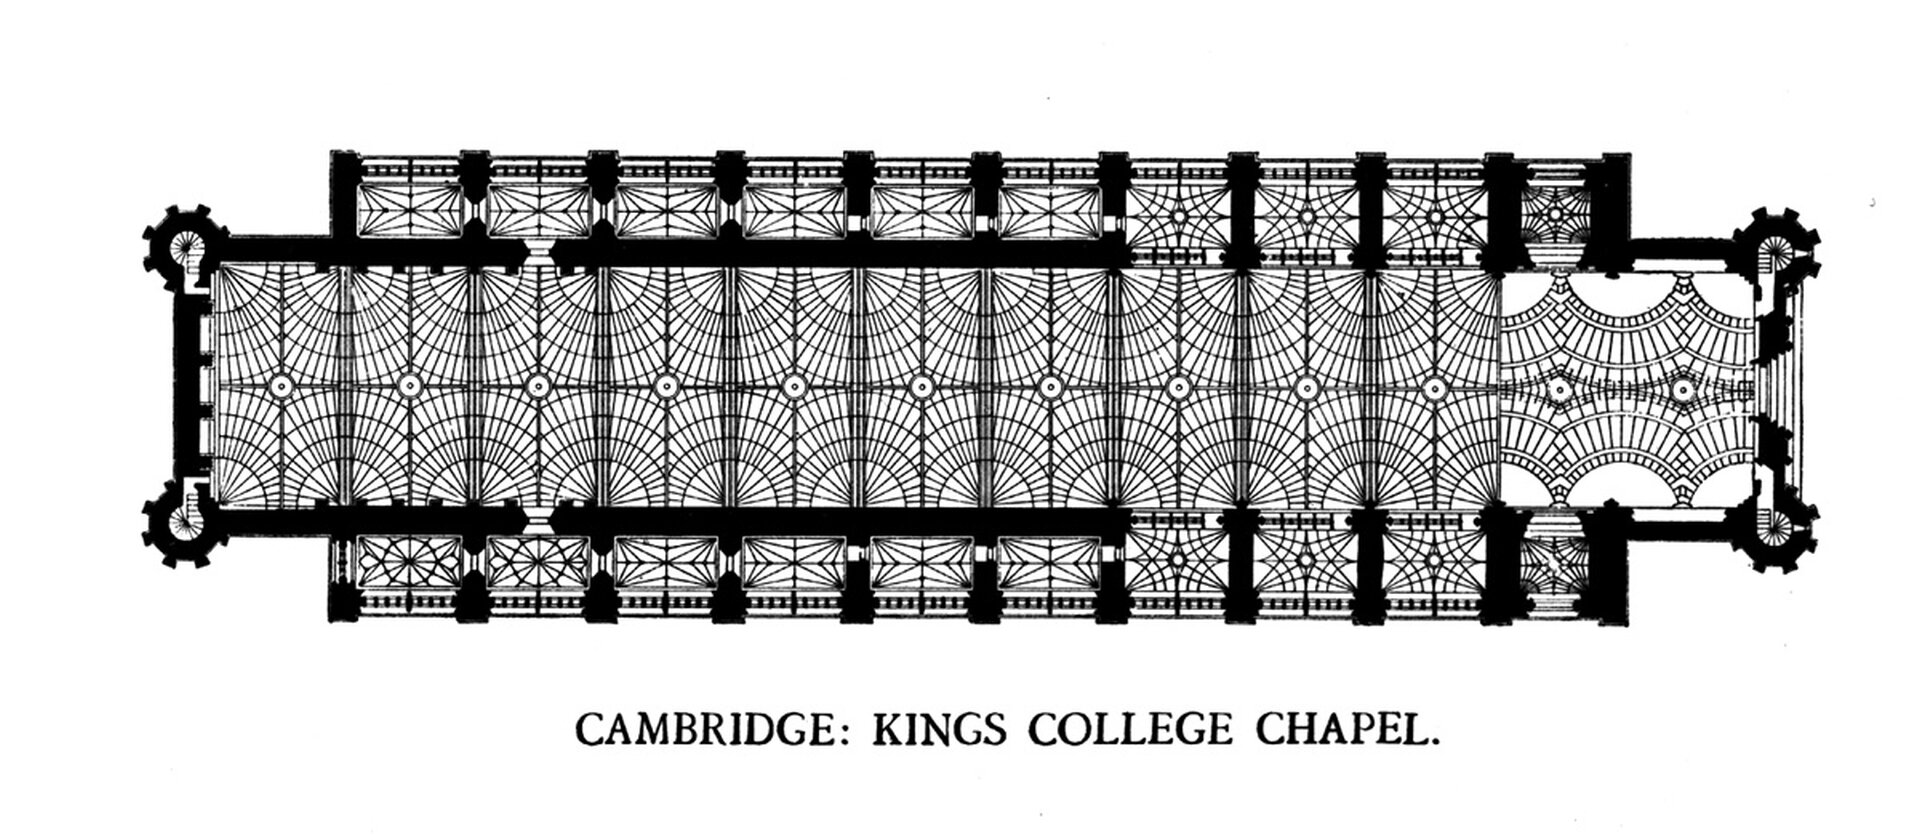 Ilustracja przedstawia plan kaplicy w Królewskim Kolegium, Cambridge. Dzieło powstało na przełomie XV/XVI wieku. Plan katedry jest w kształcie rozbudowanego prostokąta. Na planie widocznyjest podział gzymsamidwóch kondygnacji budowli. Wszystkie elementy planu zostały bardzo dokładnie zaznaczone. Wschodnia oraz zachodnia stron kaplicy są znacznie węższe oraz jej środkowej części.